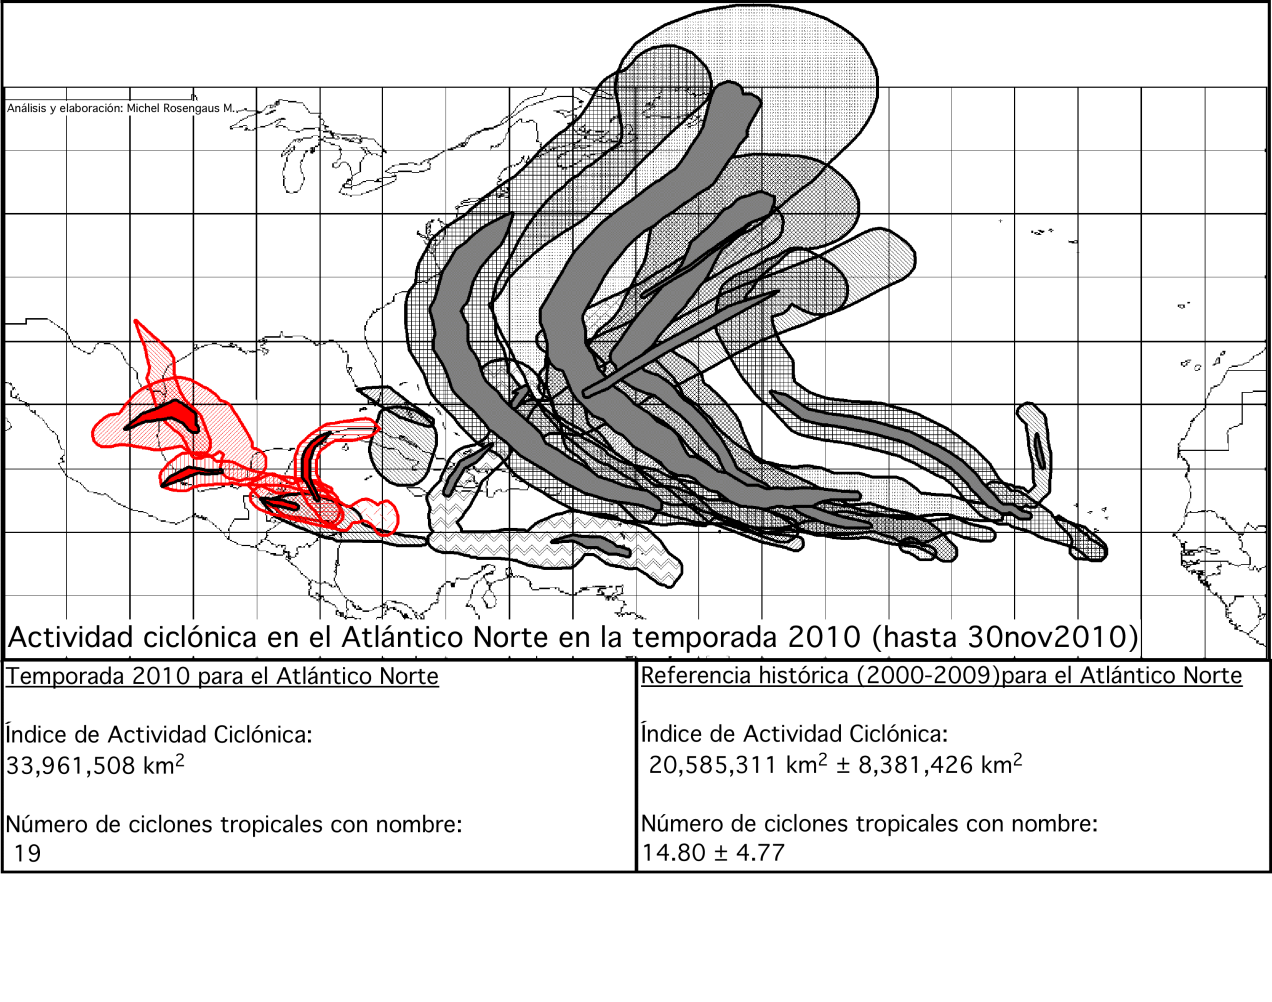 20 Se observa que la actividad ciclónica se concentró al centro del Atlántico Norte, en la vecindad de las coordenadas 60 o W y 25 o N, dominada por sistemas de largo desarrollo que recurvaron hacia